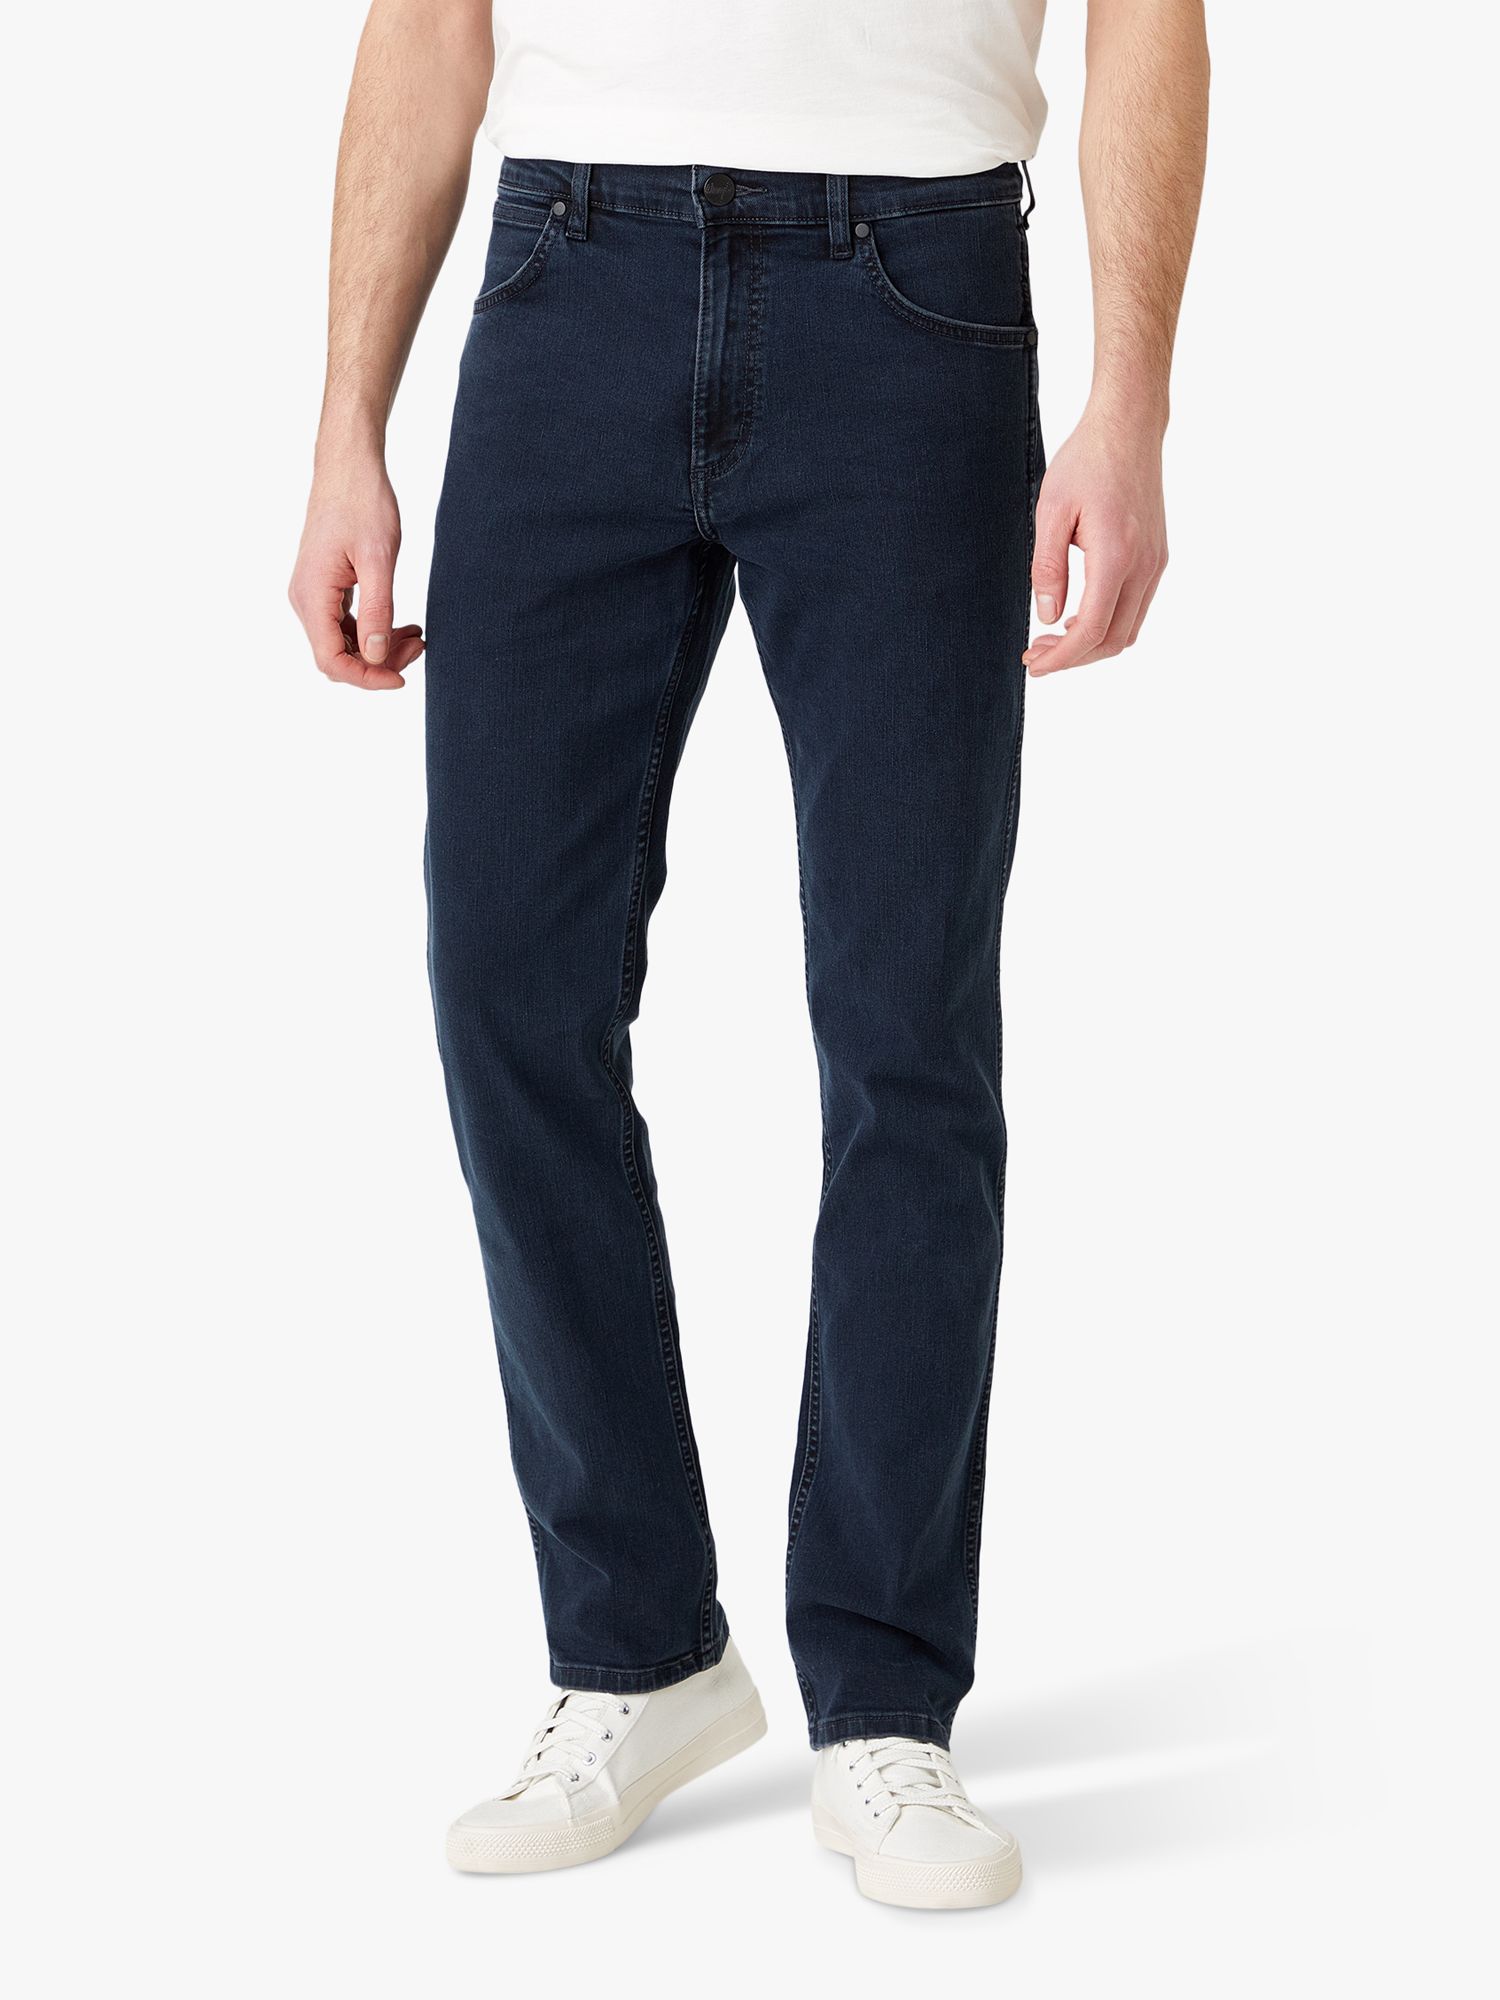 Wrangler Greensboro Slim Fit Denim Jeans, Blue at John Lewis & Partners